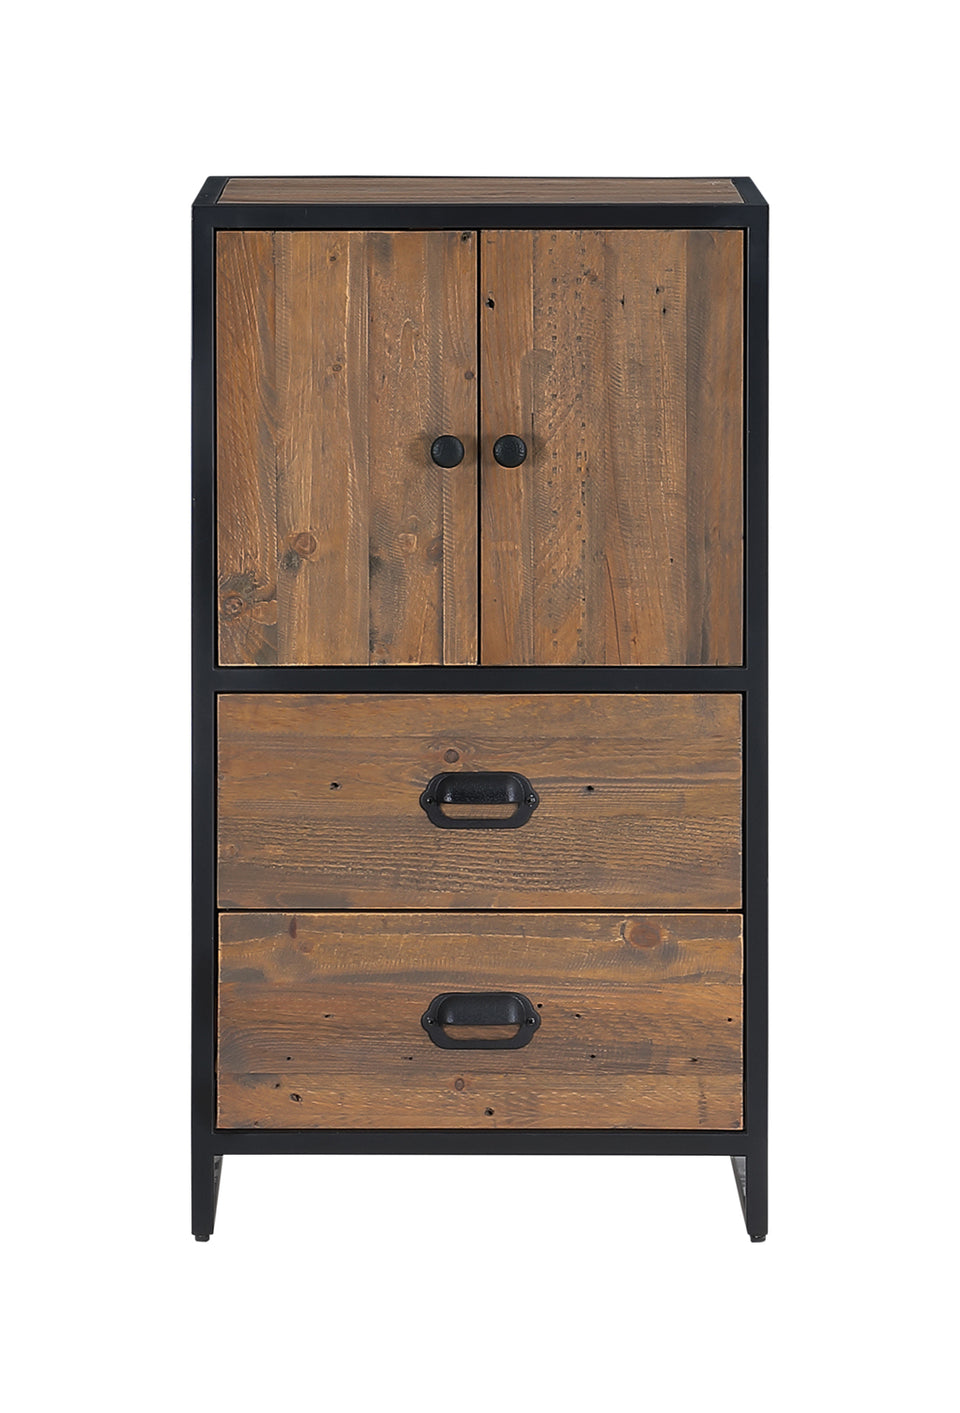 Ooki Reclaimed Wood- Modular Medium Cupboard with doors